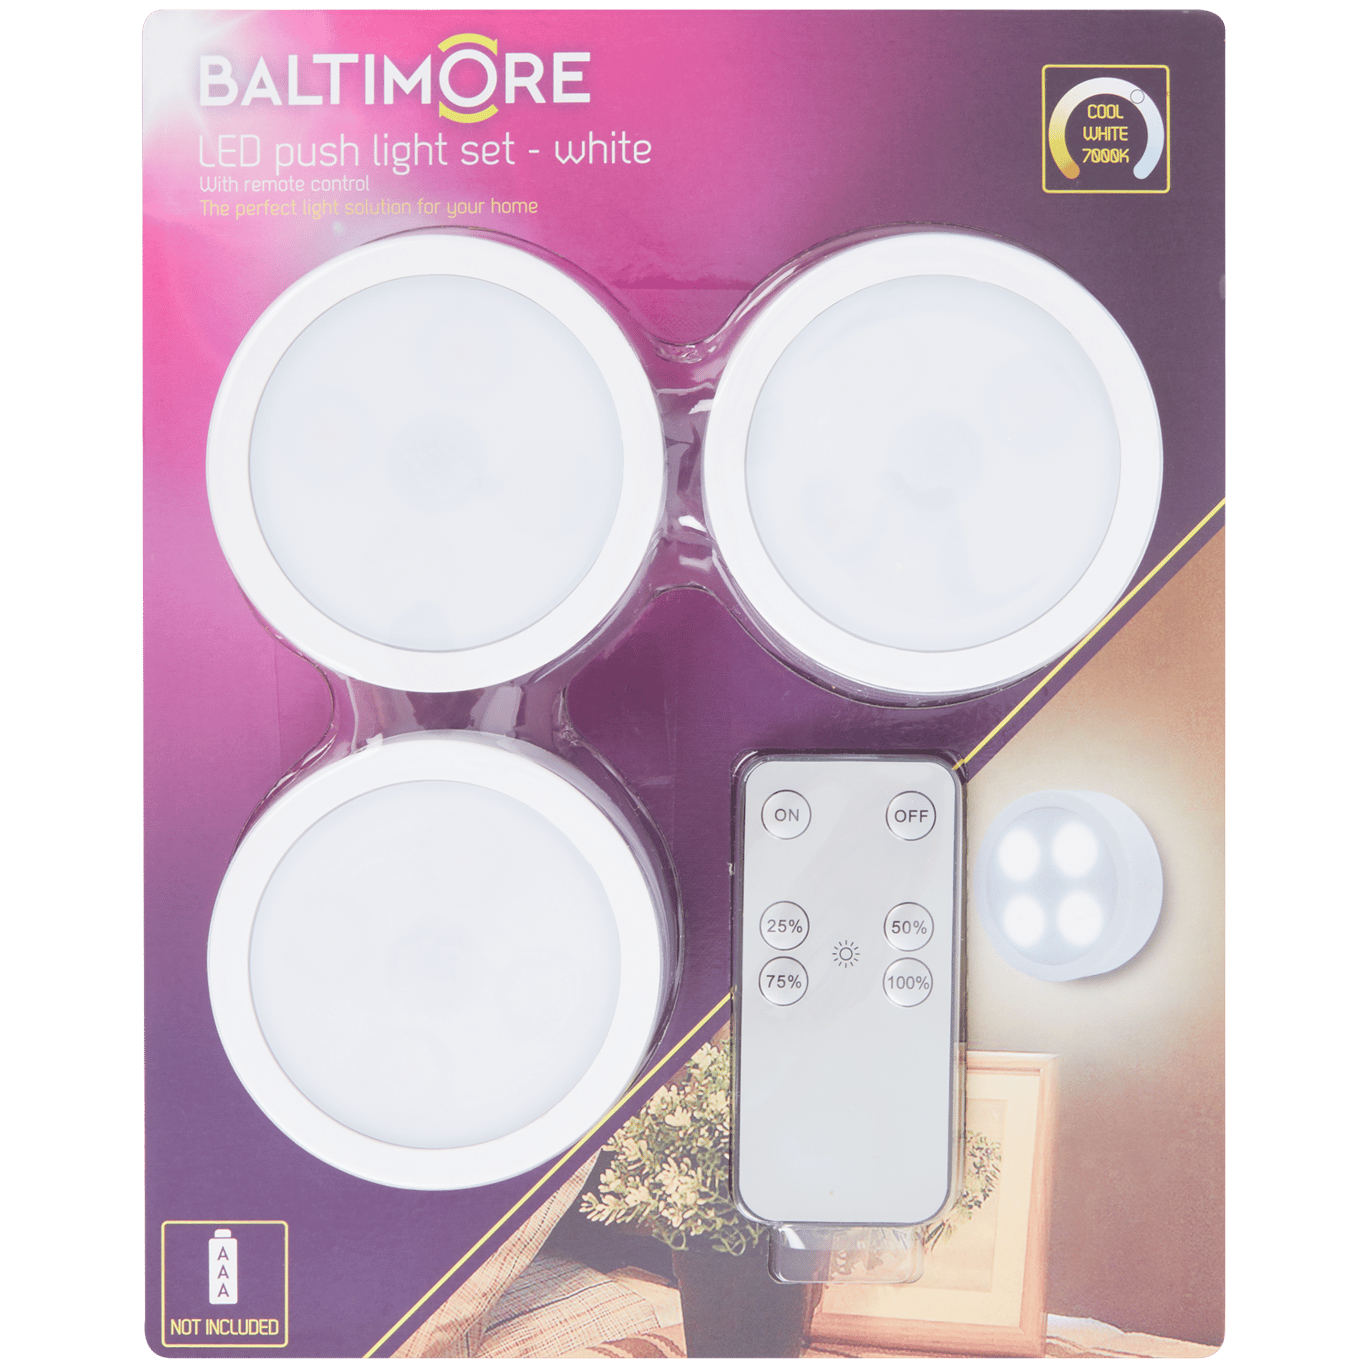 Baltimore druklampen met afstandsbediening